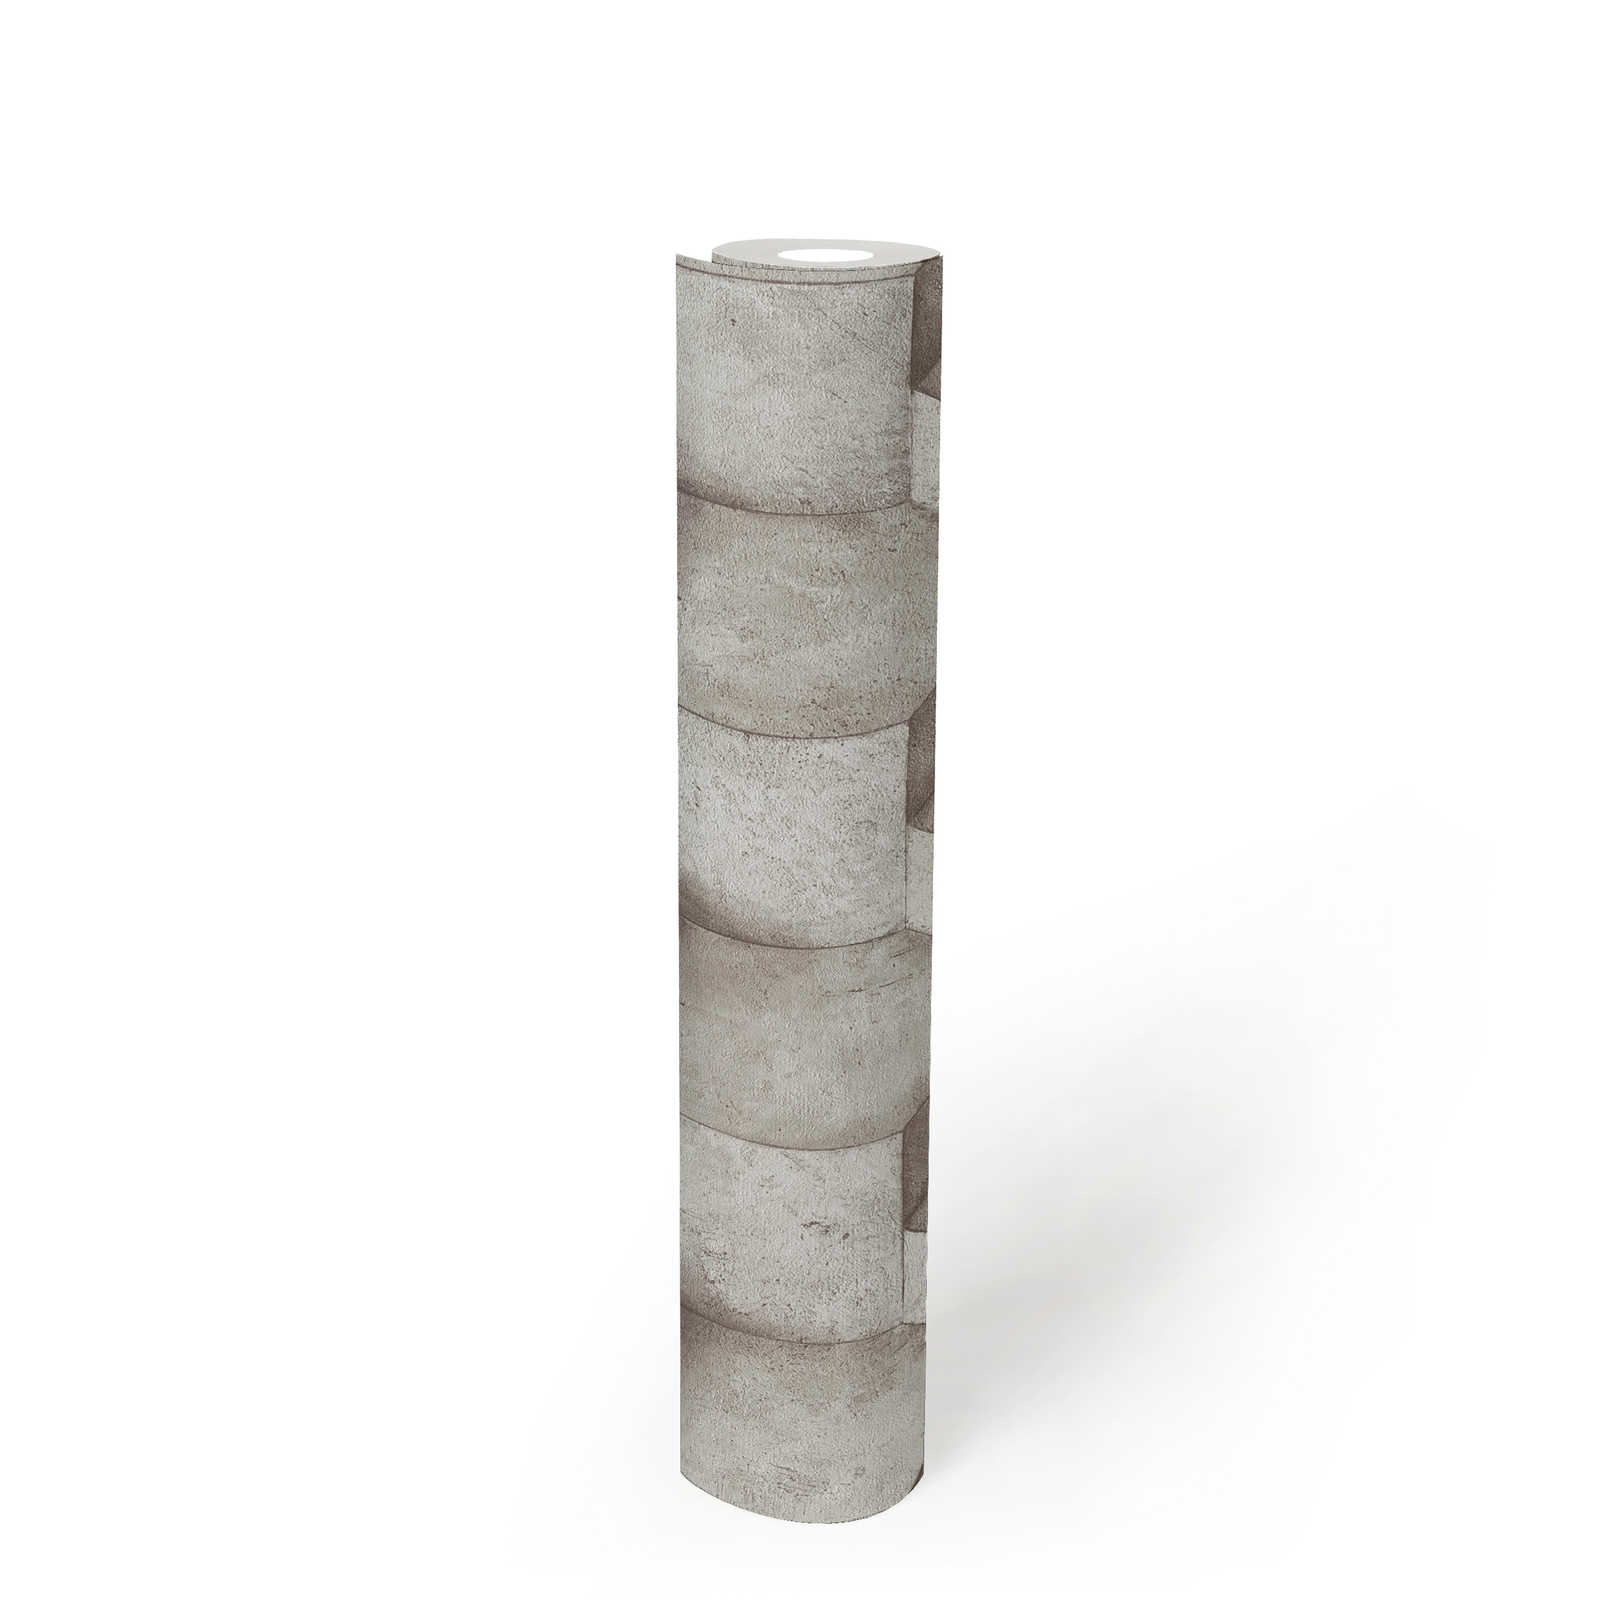             3D-behang grijs met betonlook design - grijs, beige
        